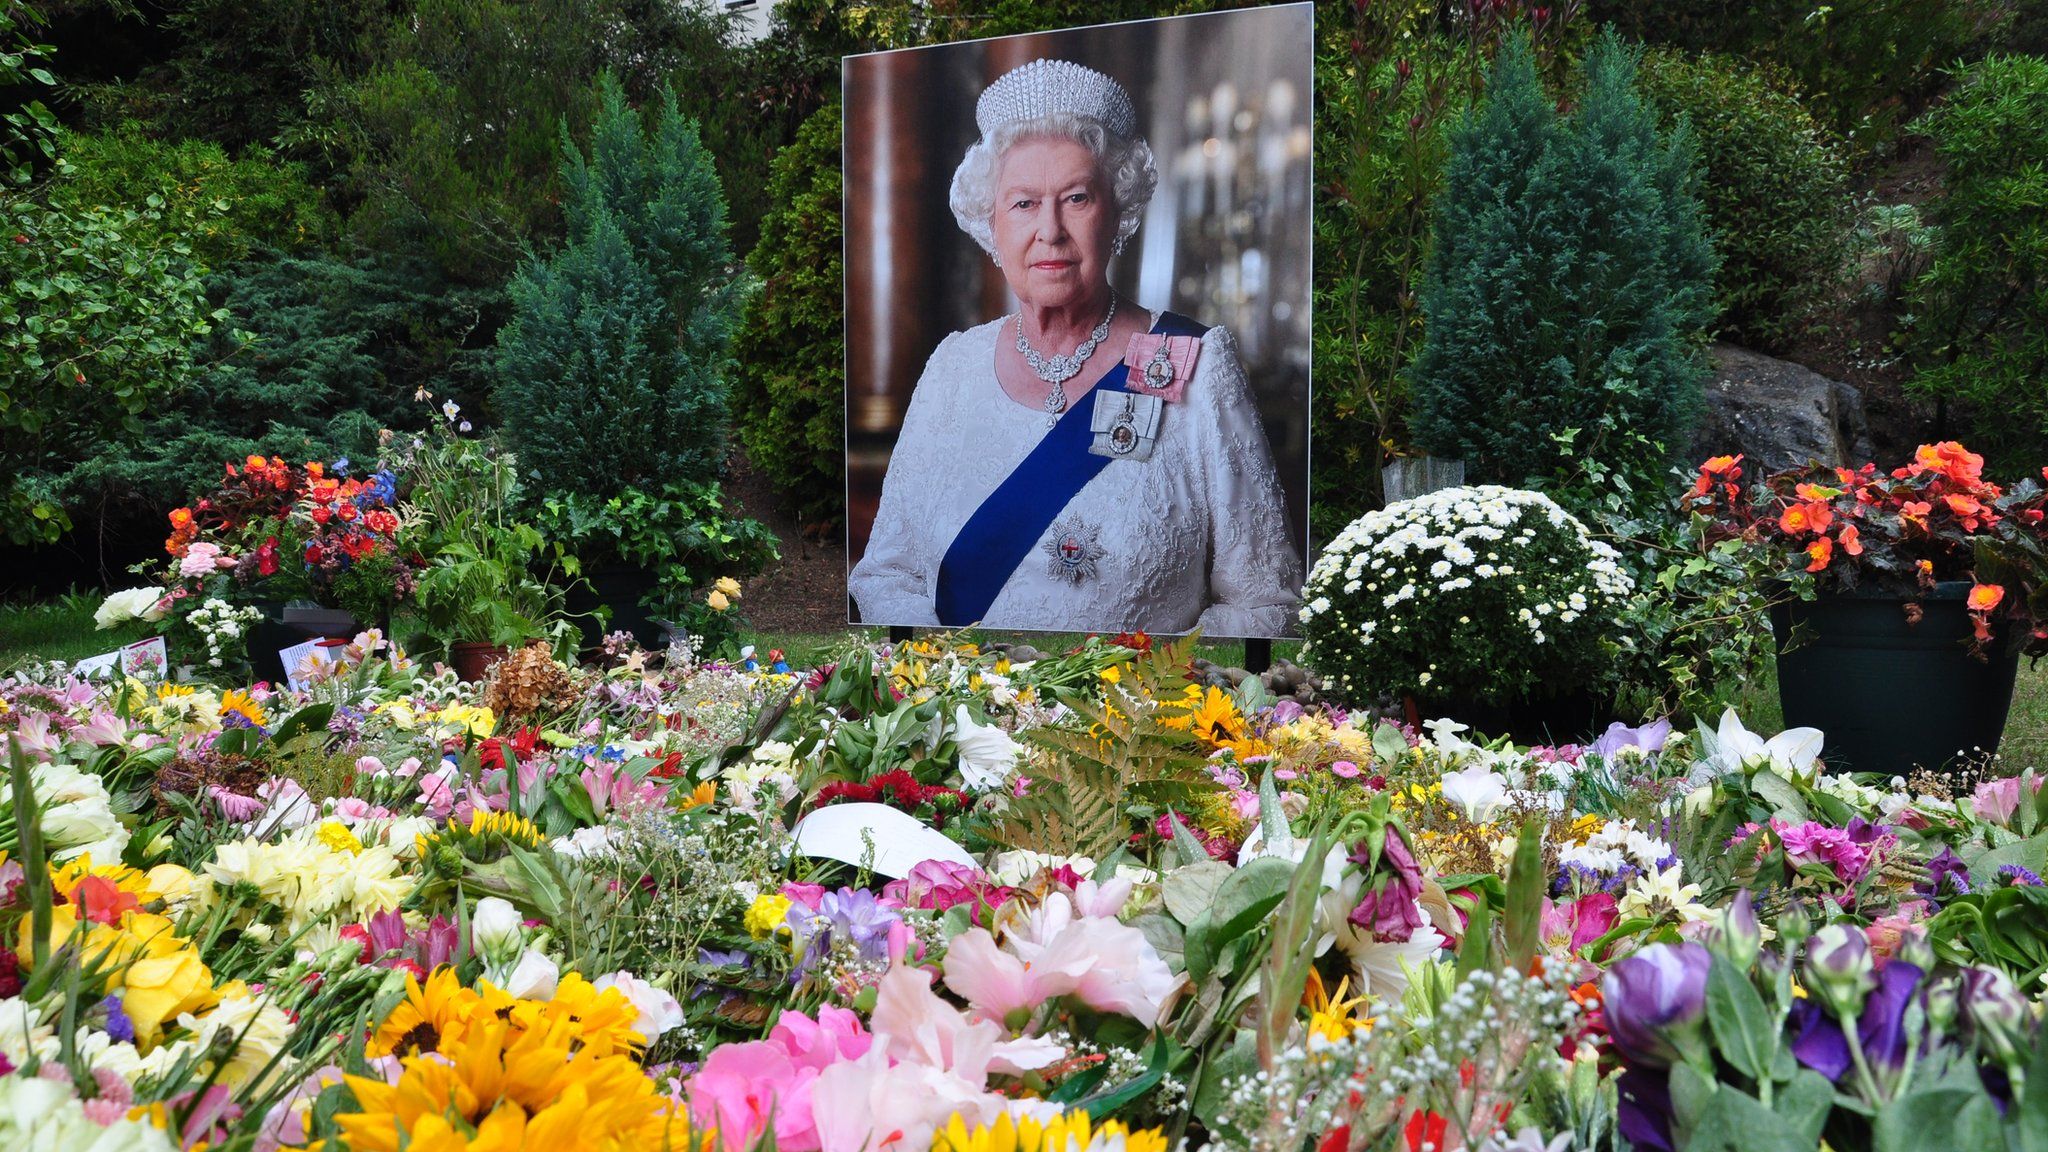 Floral tribute left to Queen Elizabeth II in the Sunken Gardens, St Peter Port, Guernsey